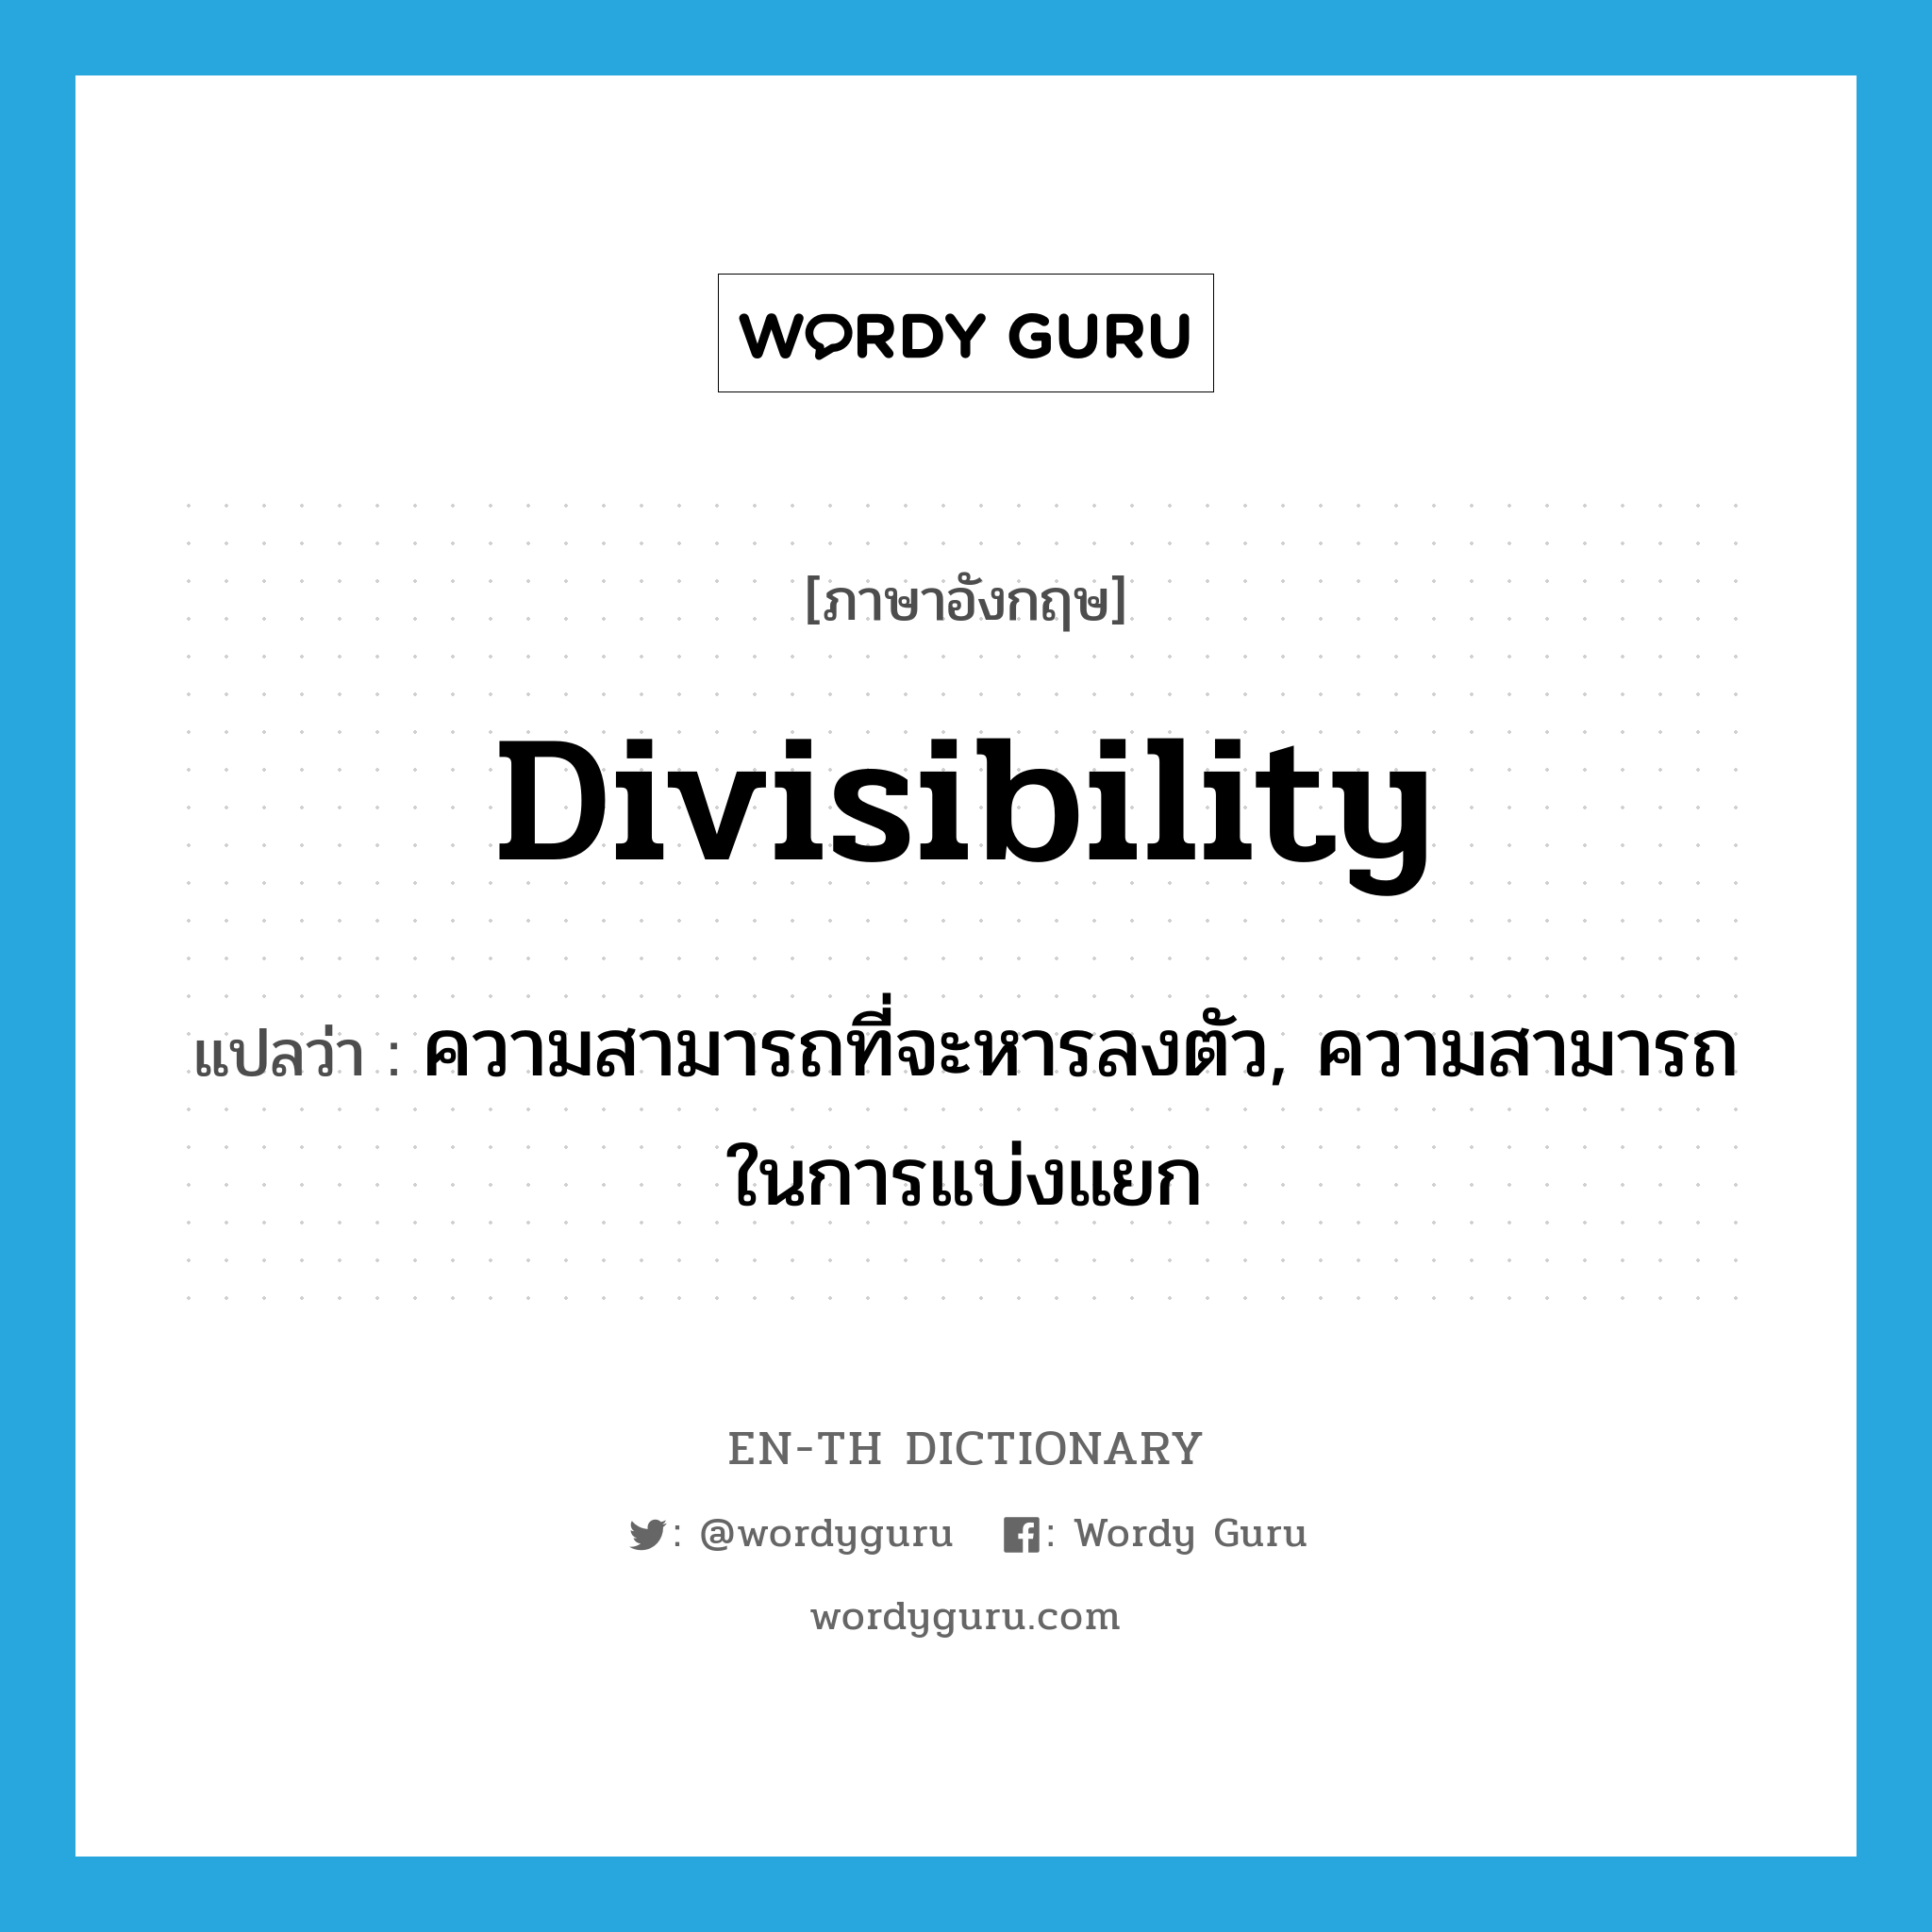 divisibility แปลว่า?, คำศัพท์ภาษาอังกฤษ divisibility แปลว่า ความสามารถที่จะหารลงตัว, ความสามารถในการแบ่งแยก ประเภท N หมวด N